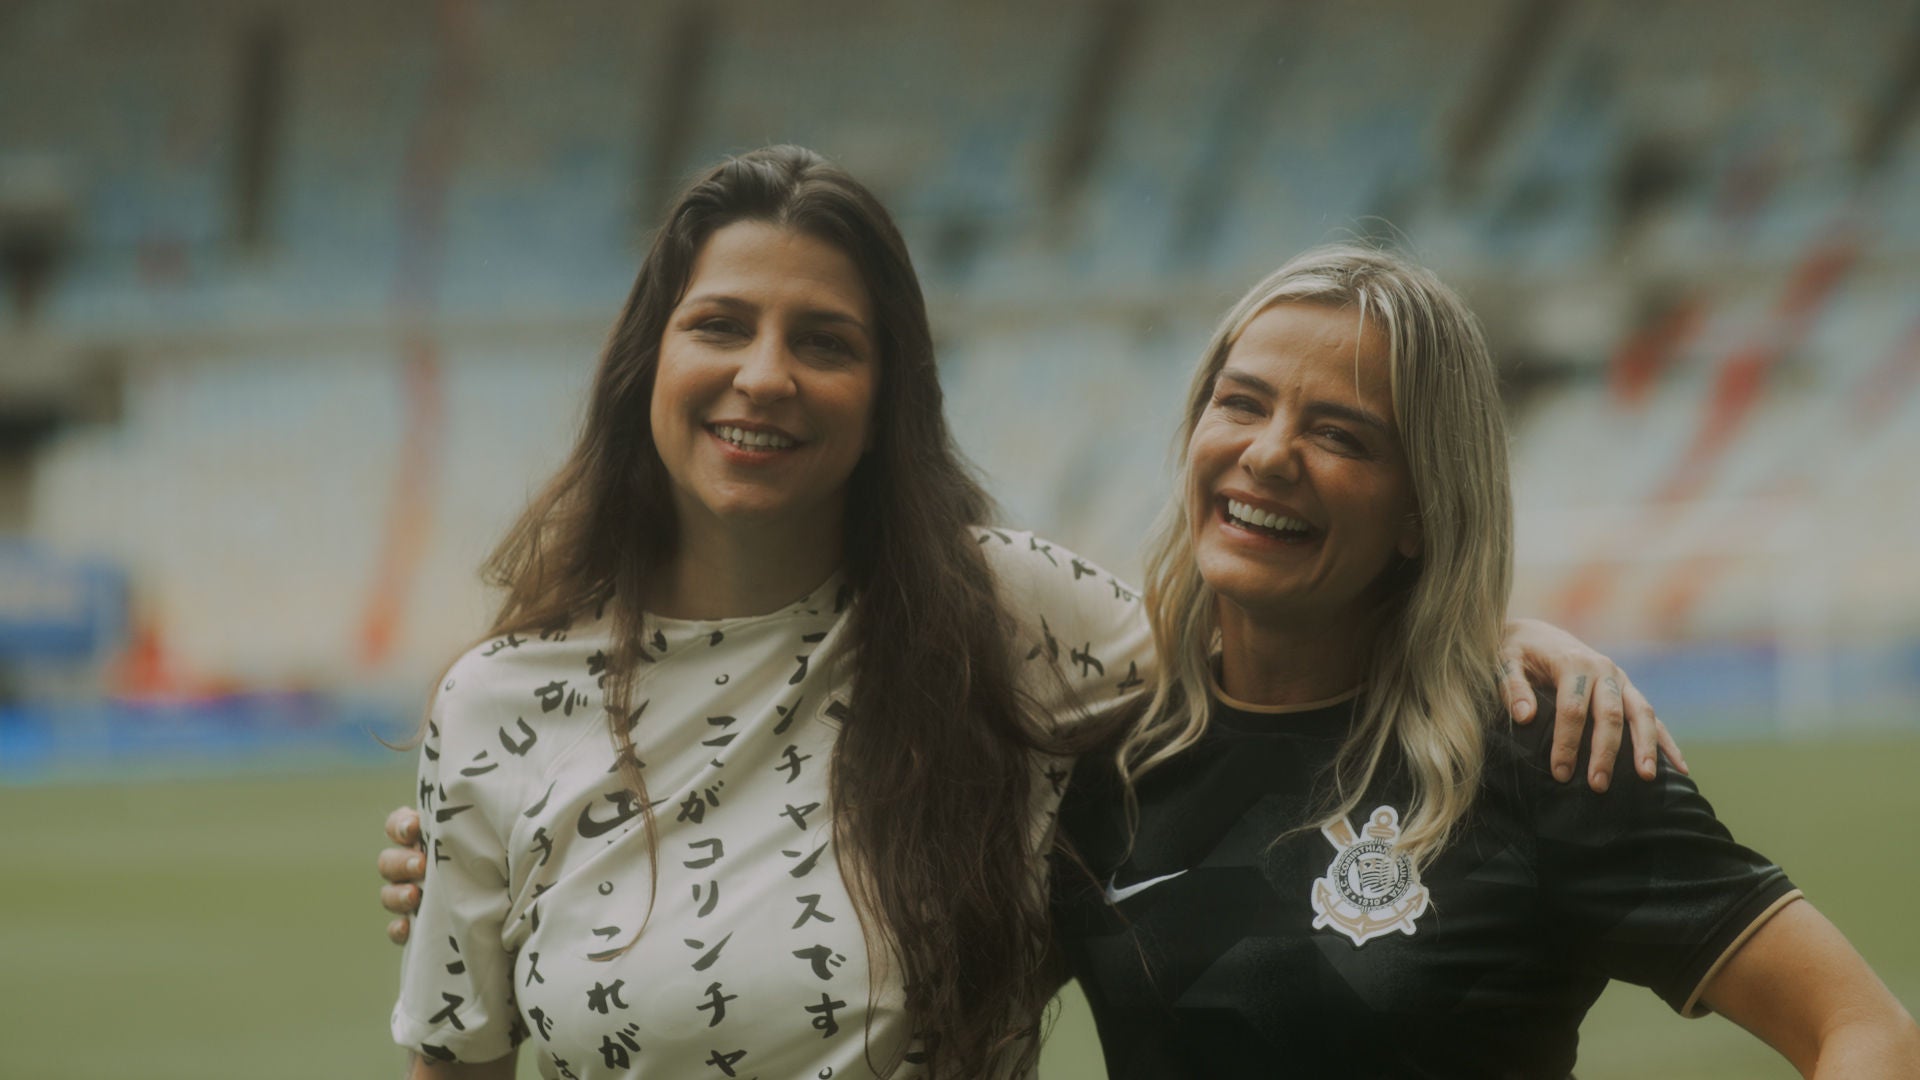 (foto de frente da corinthiana Leonor Macedo com camisa do Corinthians, abraçada e sorrindo junto da comentarista esportiva Milena Domingues)